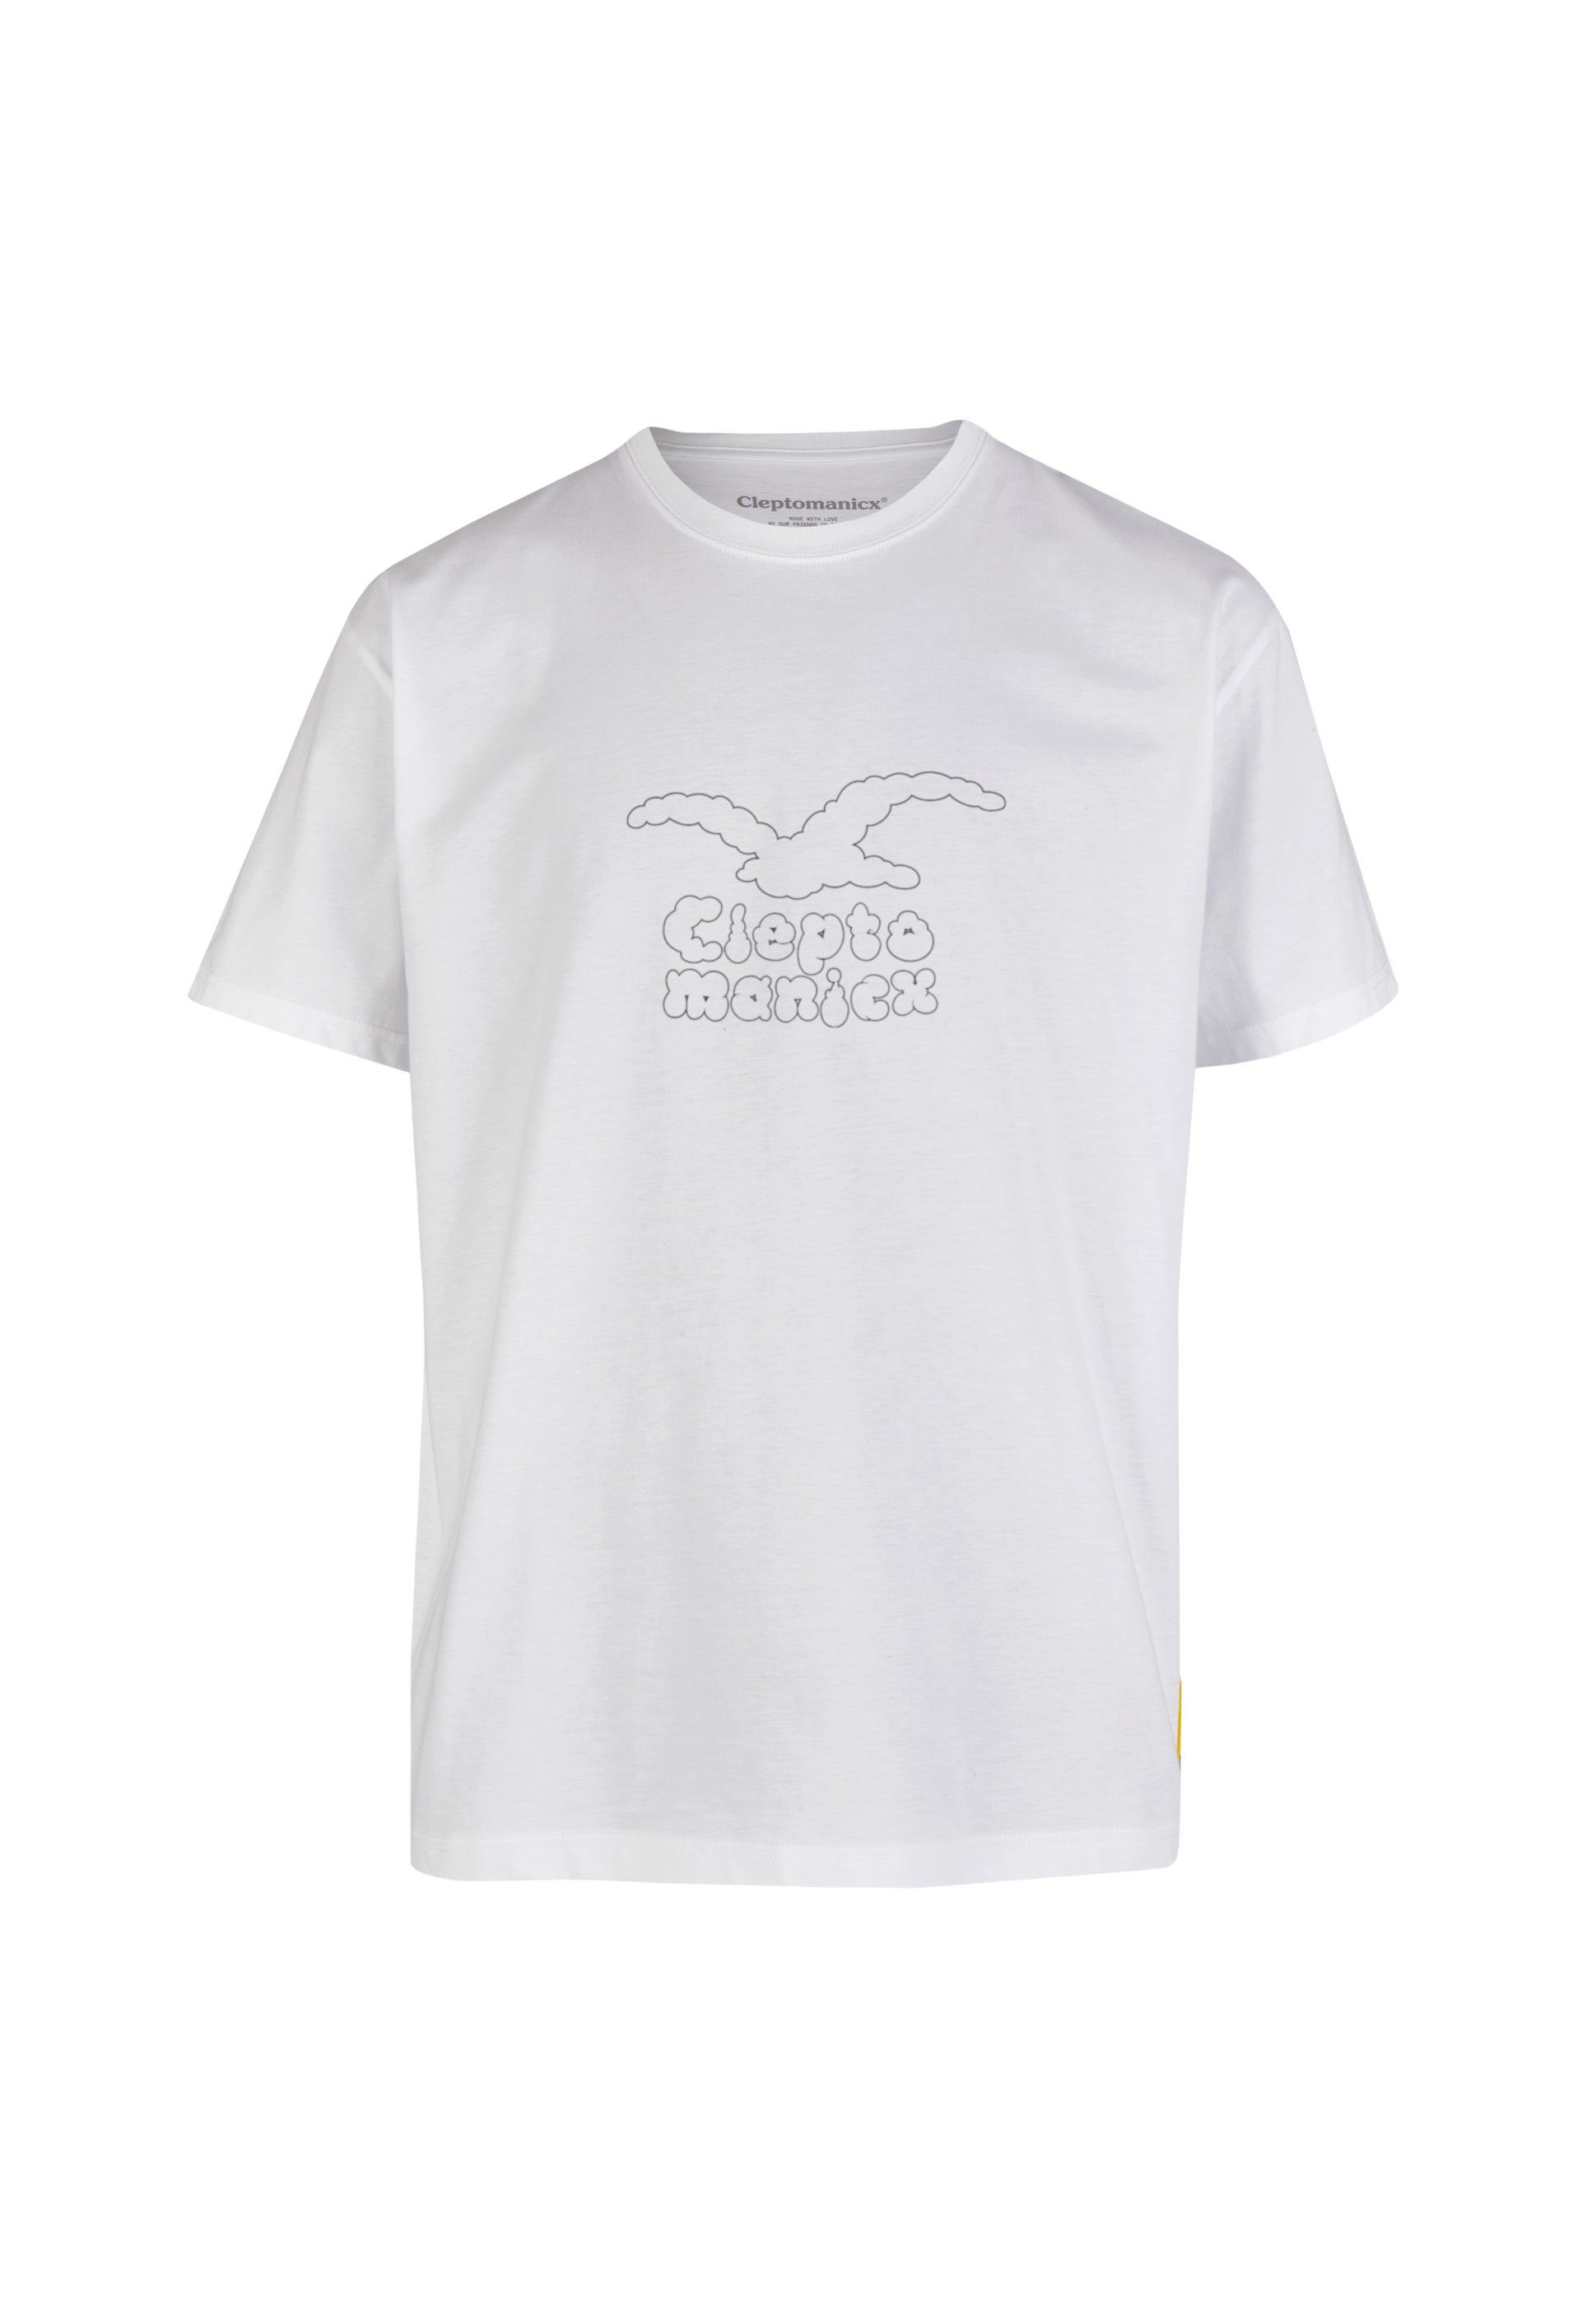 Cleptomanicx T-Shirt Clouds mit lockerem Schnitt | Sport-T-Shirts